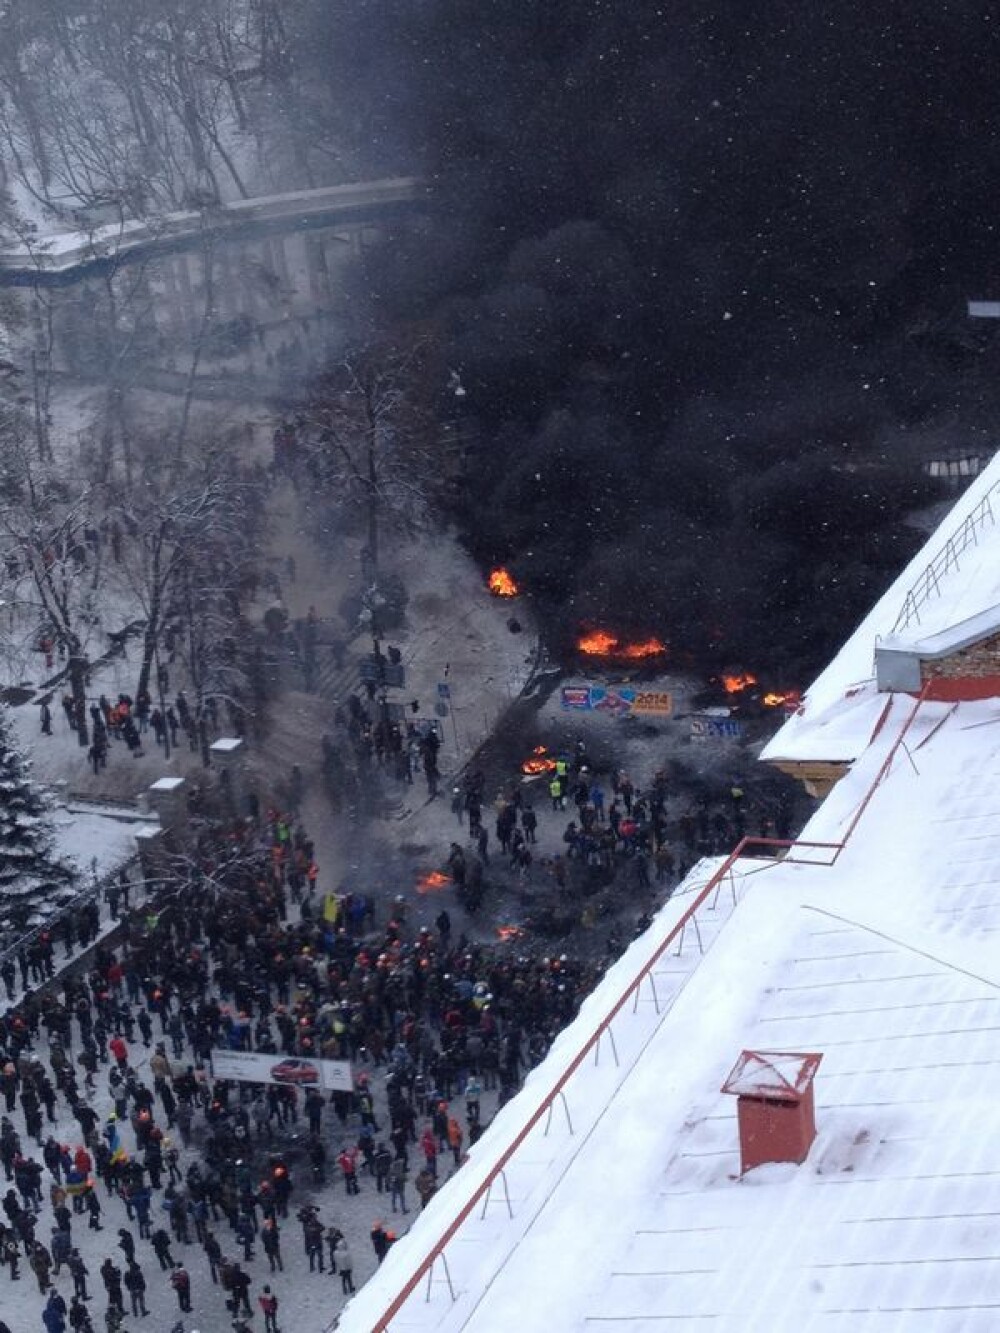 Criza din Ucraina. Mii de protestatari au luat cu asalt aseara o cladire ocupata de peste 200 de forte speciale - Imaginea 5